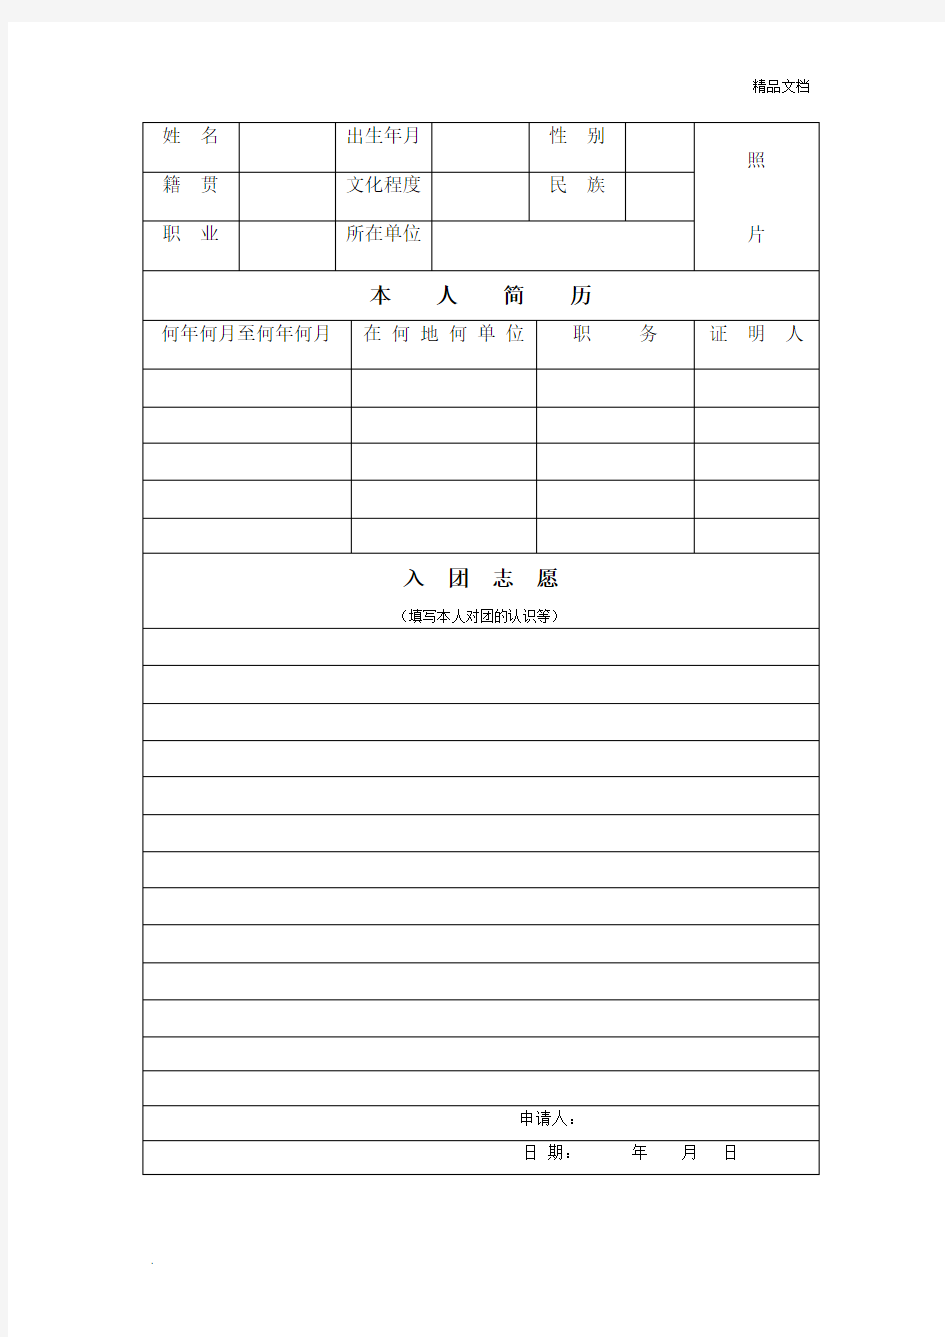 入团志愿书填写格式-(可直接打印)